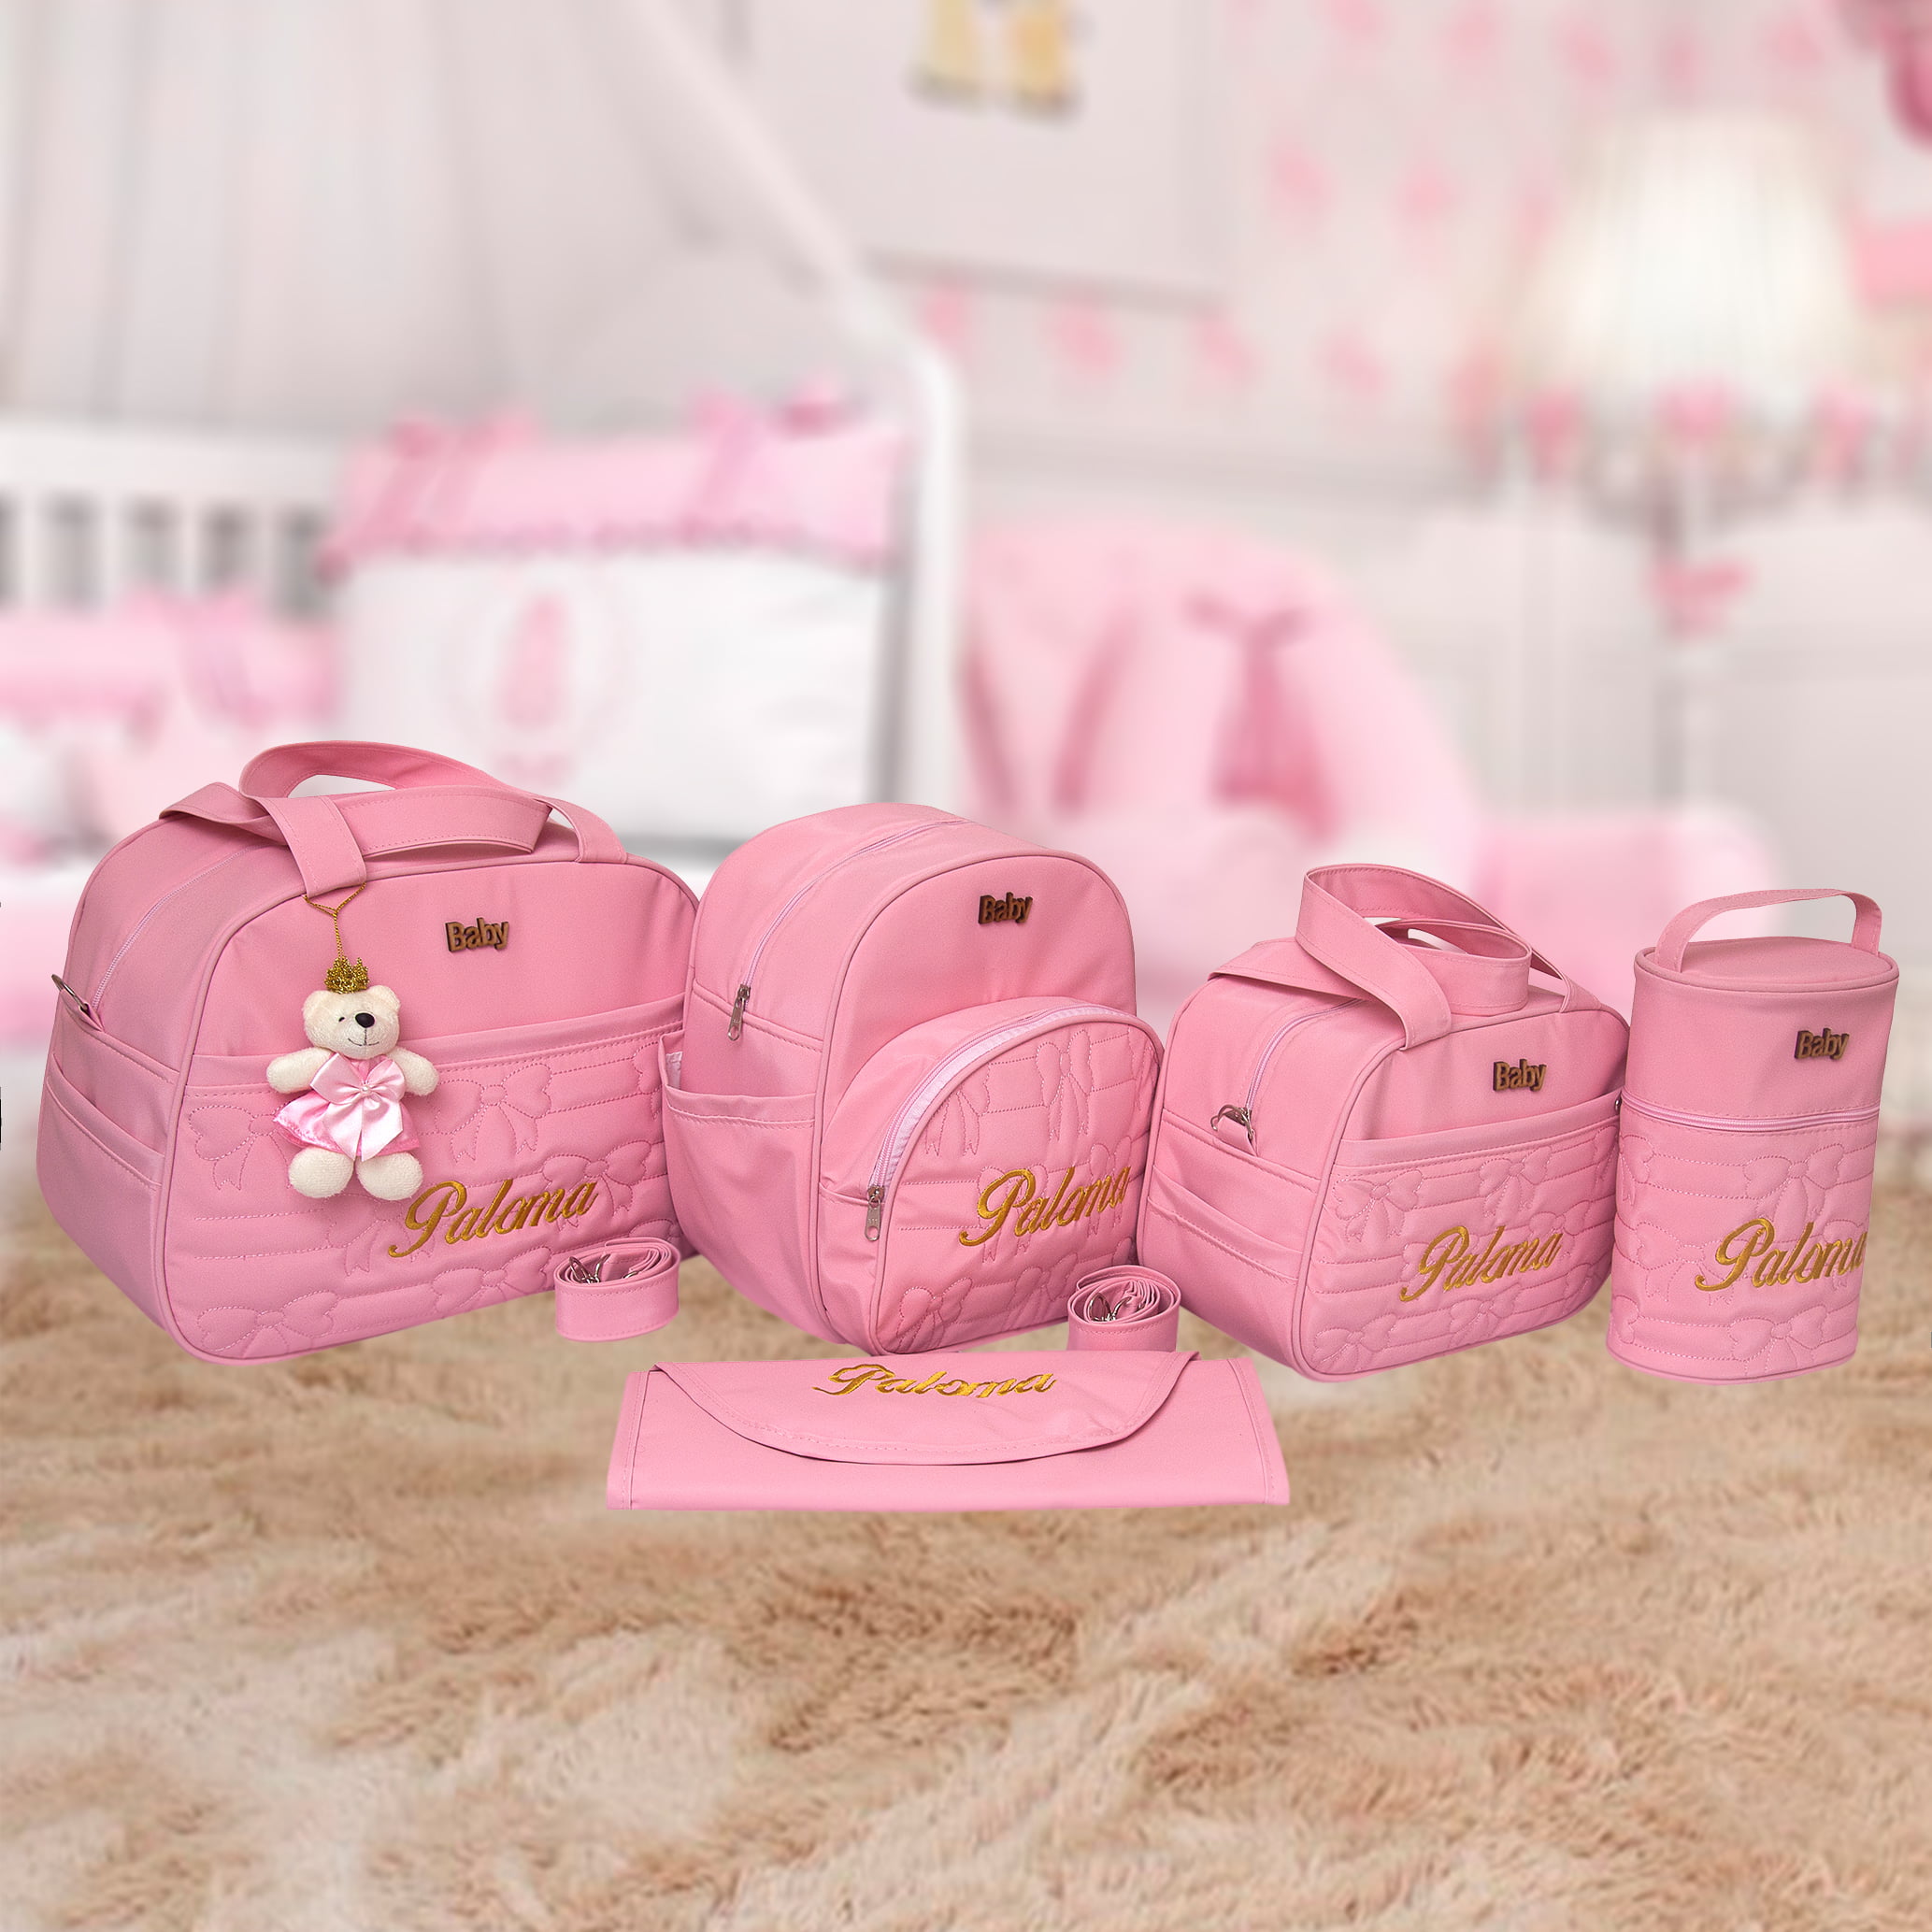 kit 4 peças bolsa bebê saída maternidade com porta mamadeira e trocador menina  cor rose